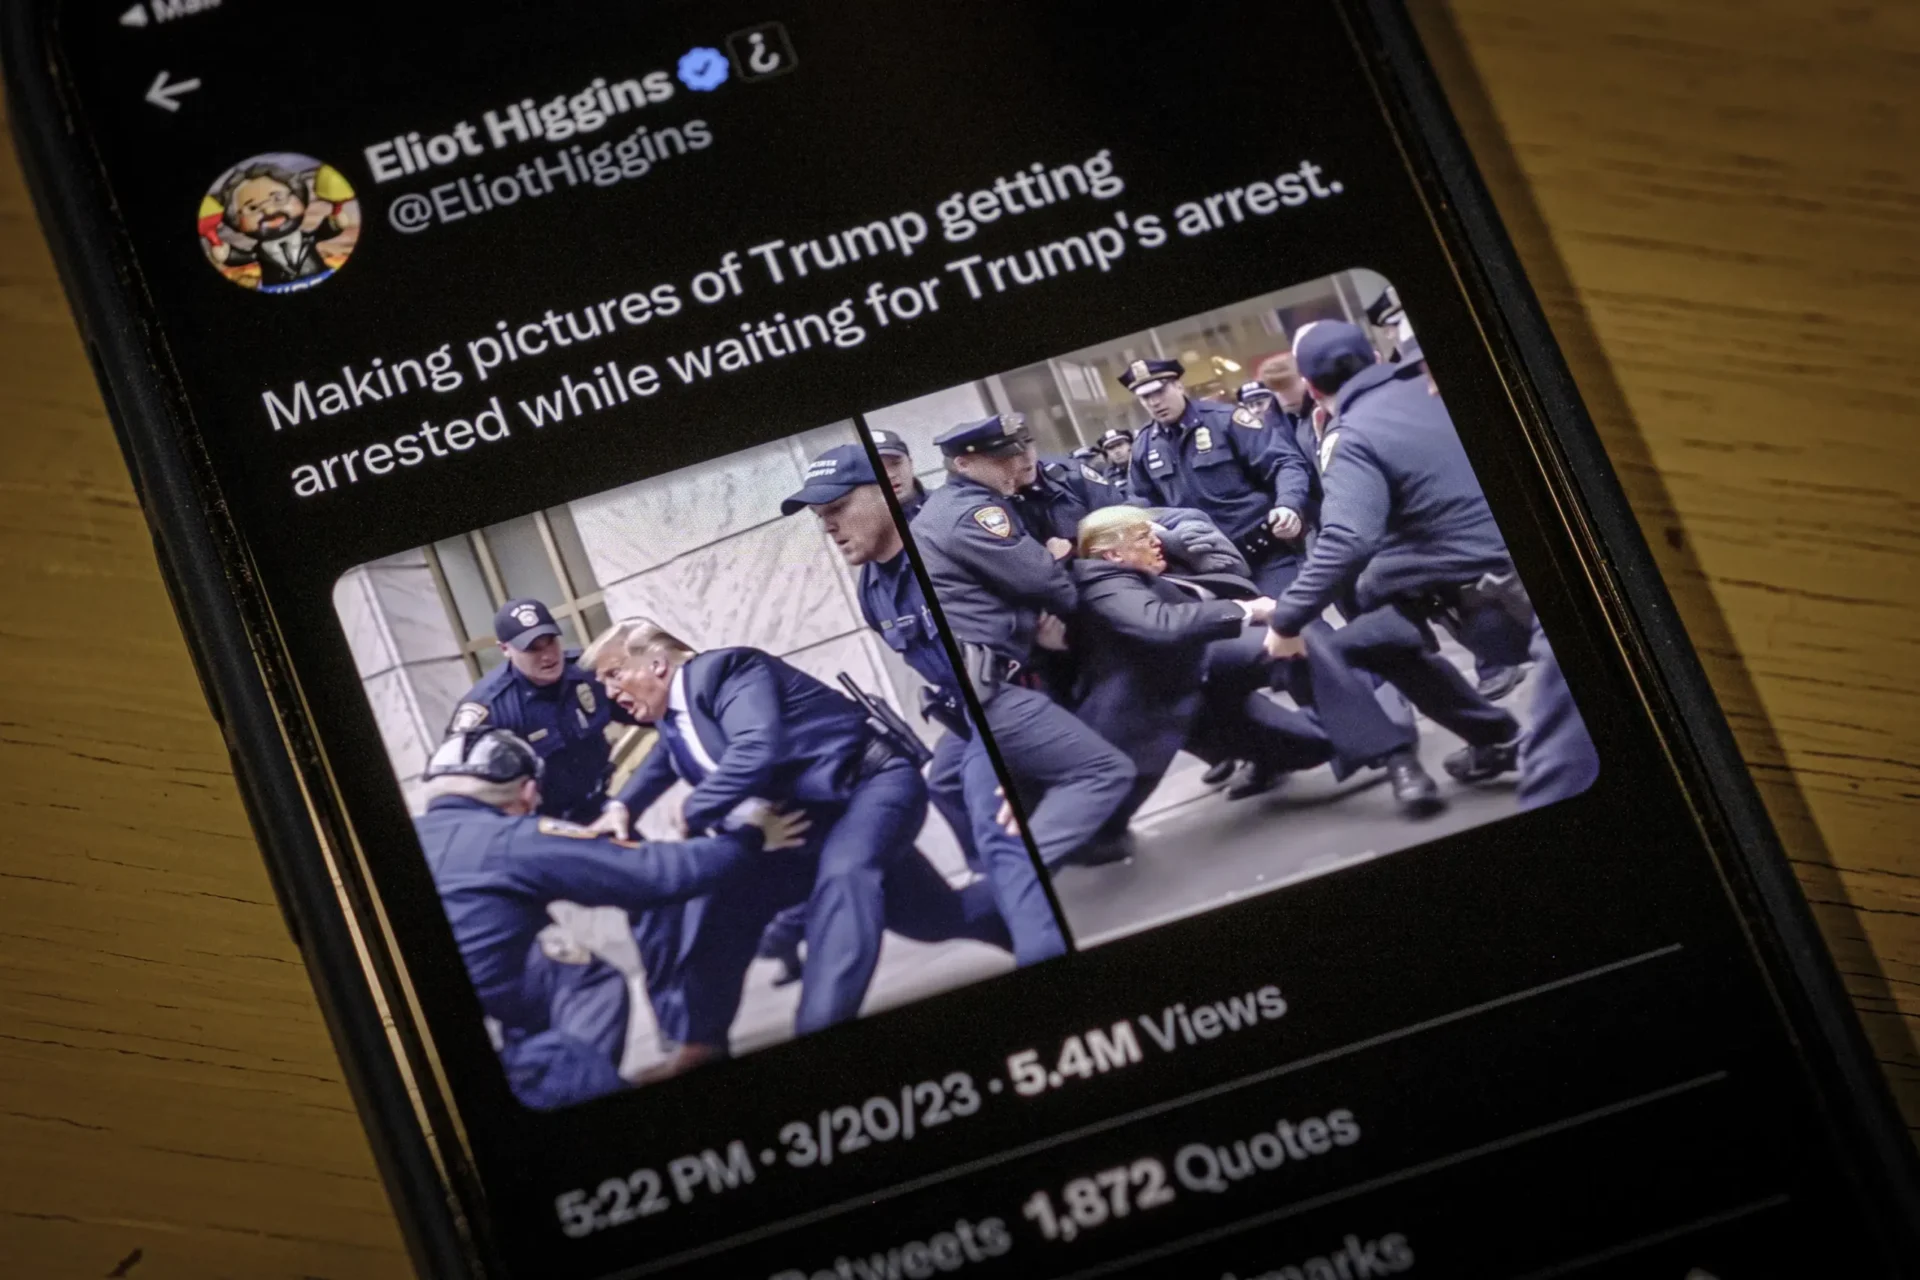 Trump arrestado?  ¿Putin encarcelado?  Imágenes falsas de IA difundidas en línea